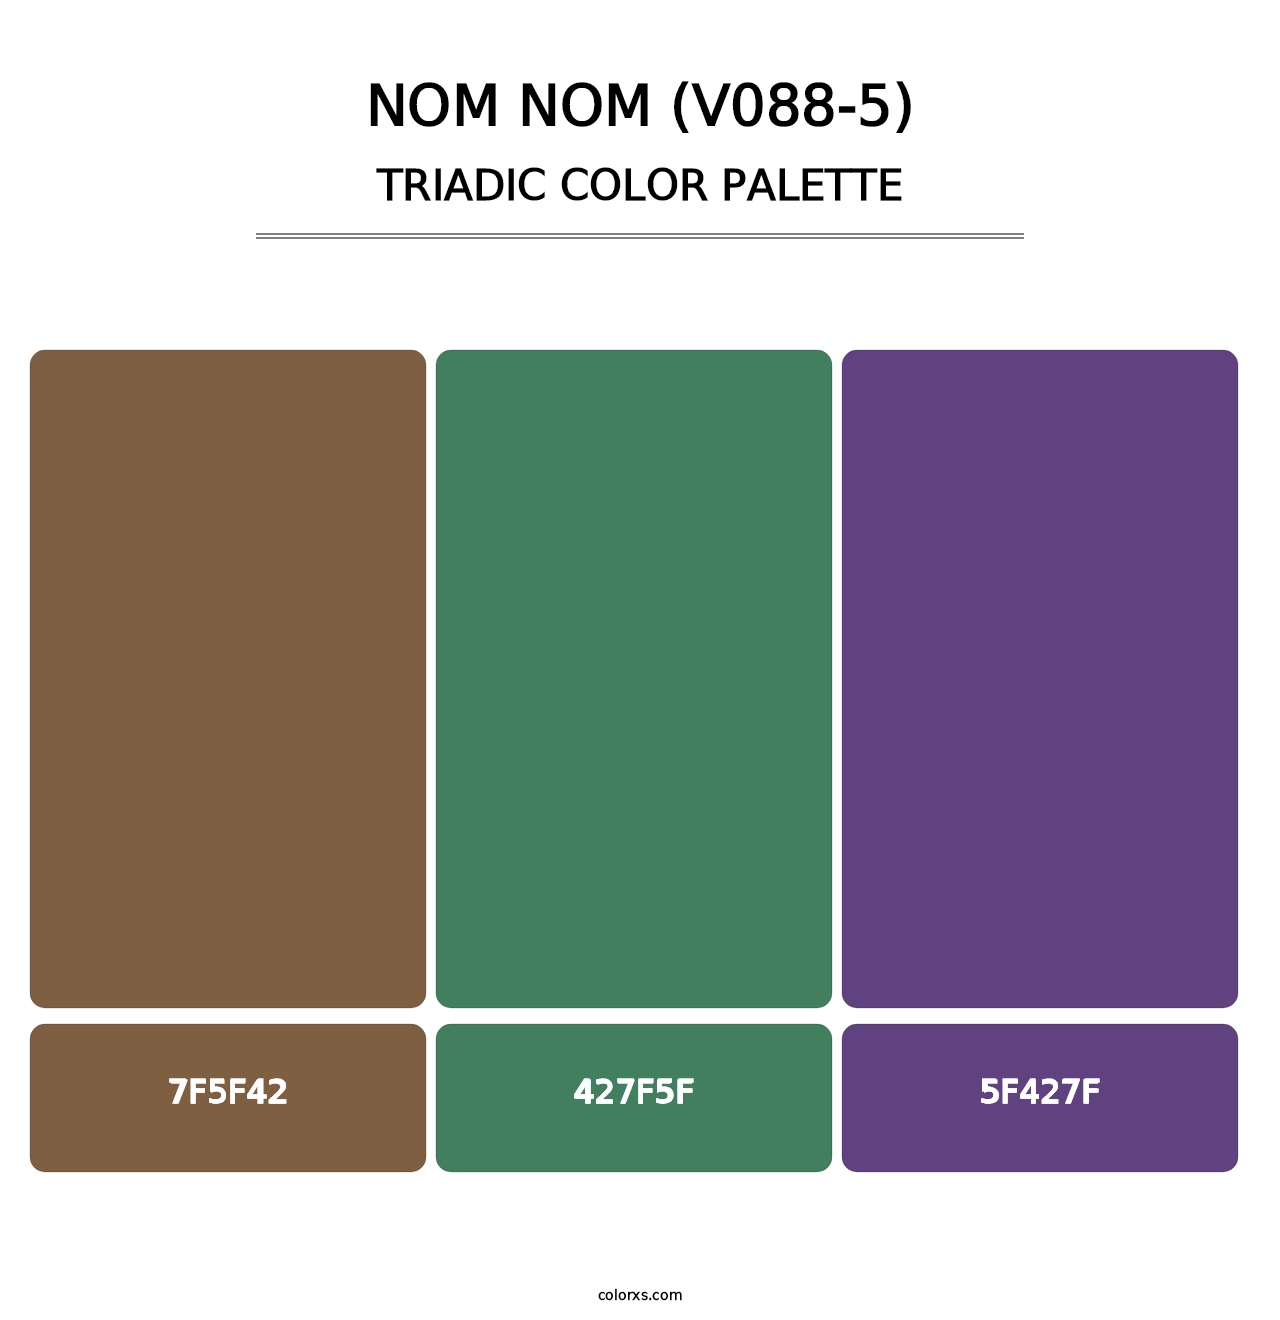 Nom Nom (V088-5) - Triadic Color Palette